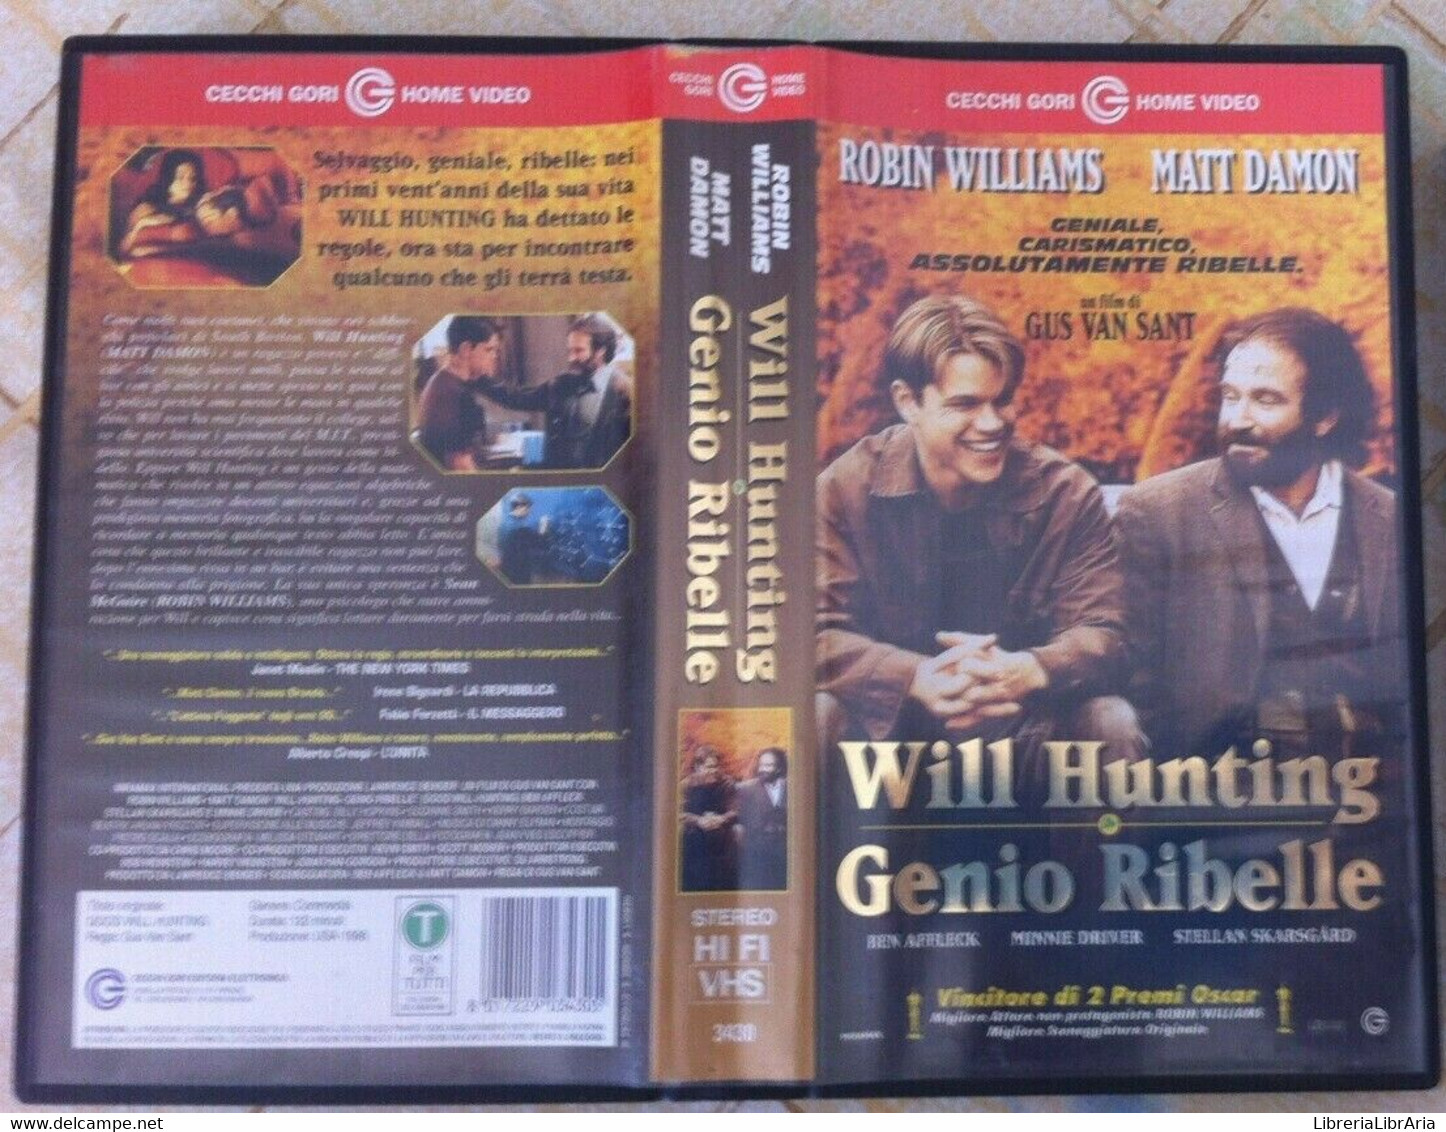 Will Hunting Genio Ribelle-Vhs-1998-Cecchi Gori Home Video-F - Collections